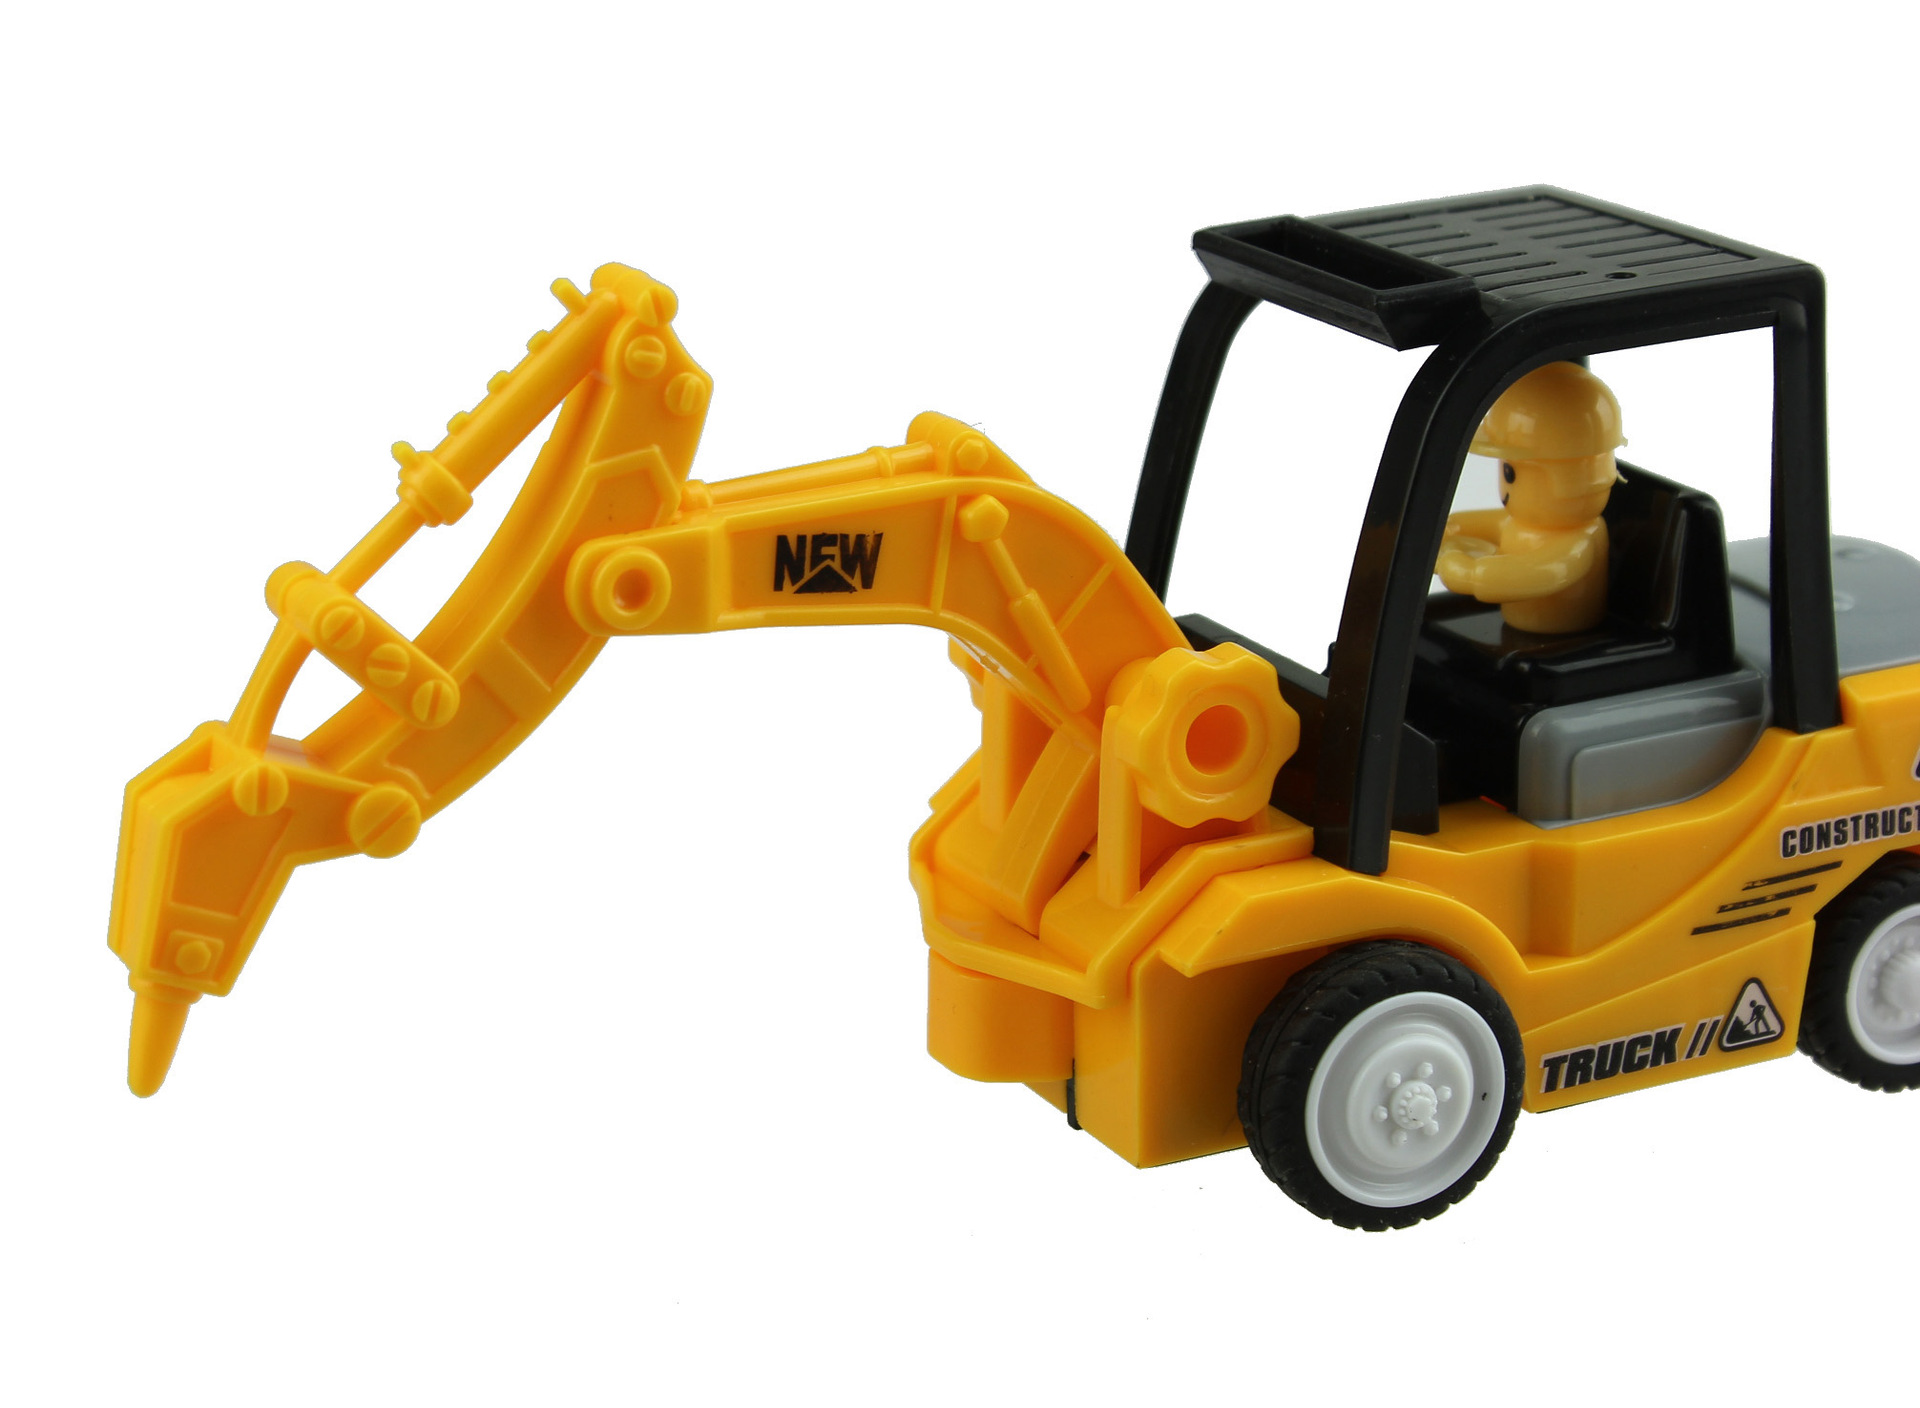 儿童玩具_儿童玩具工程车挖掘机推土车环保四款沙滩玩具 - 阿里巴巴